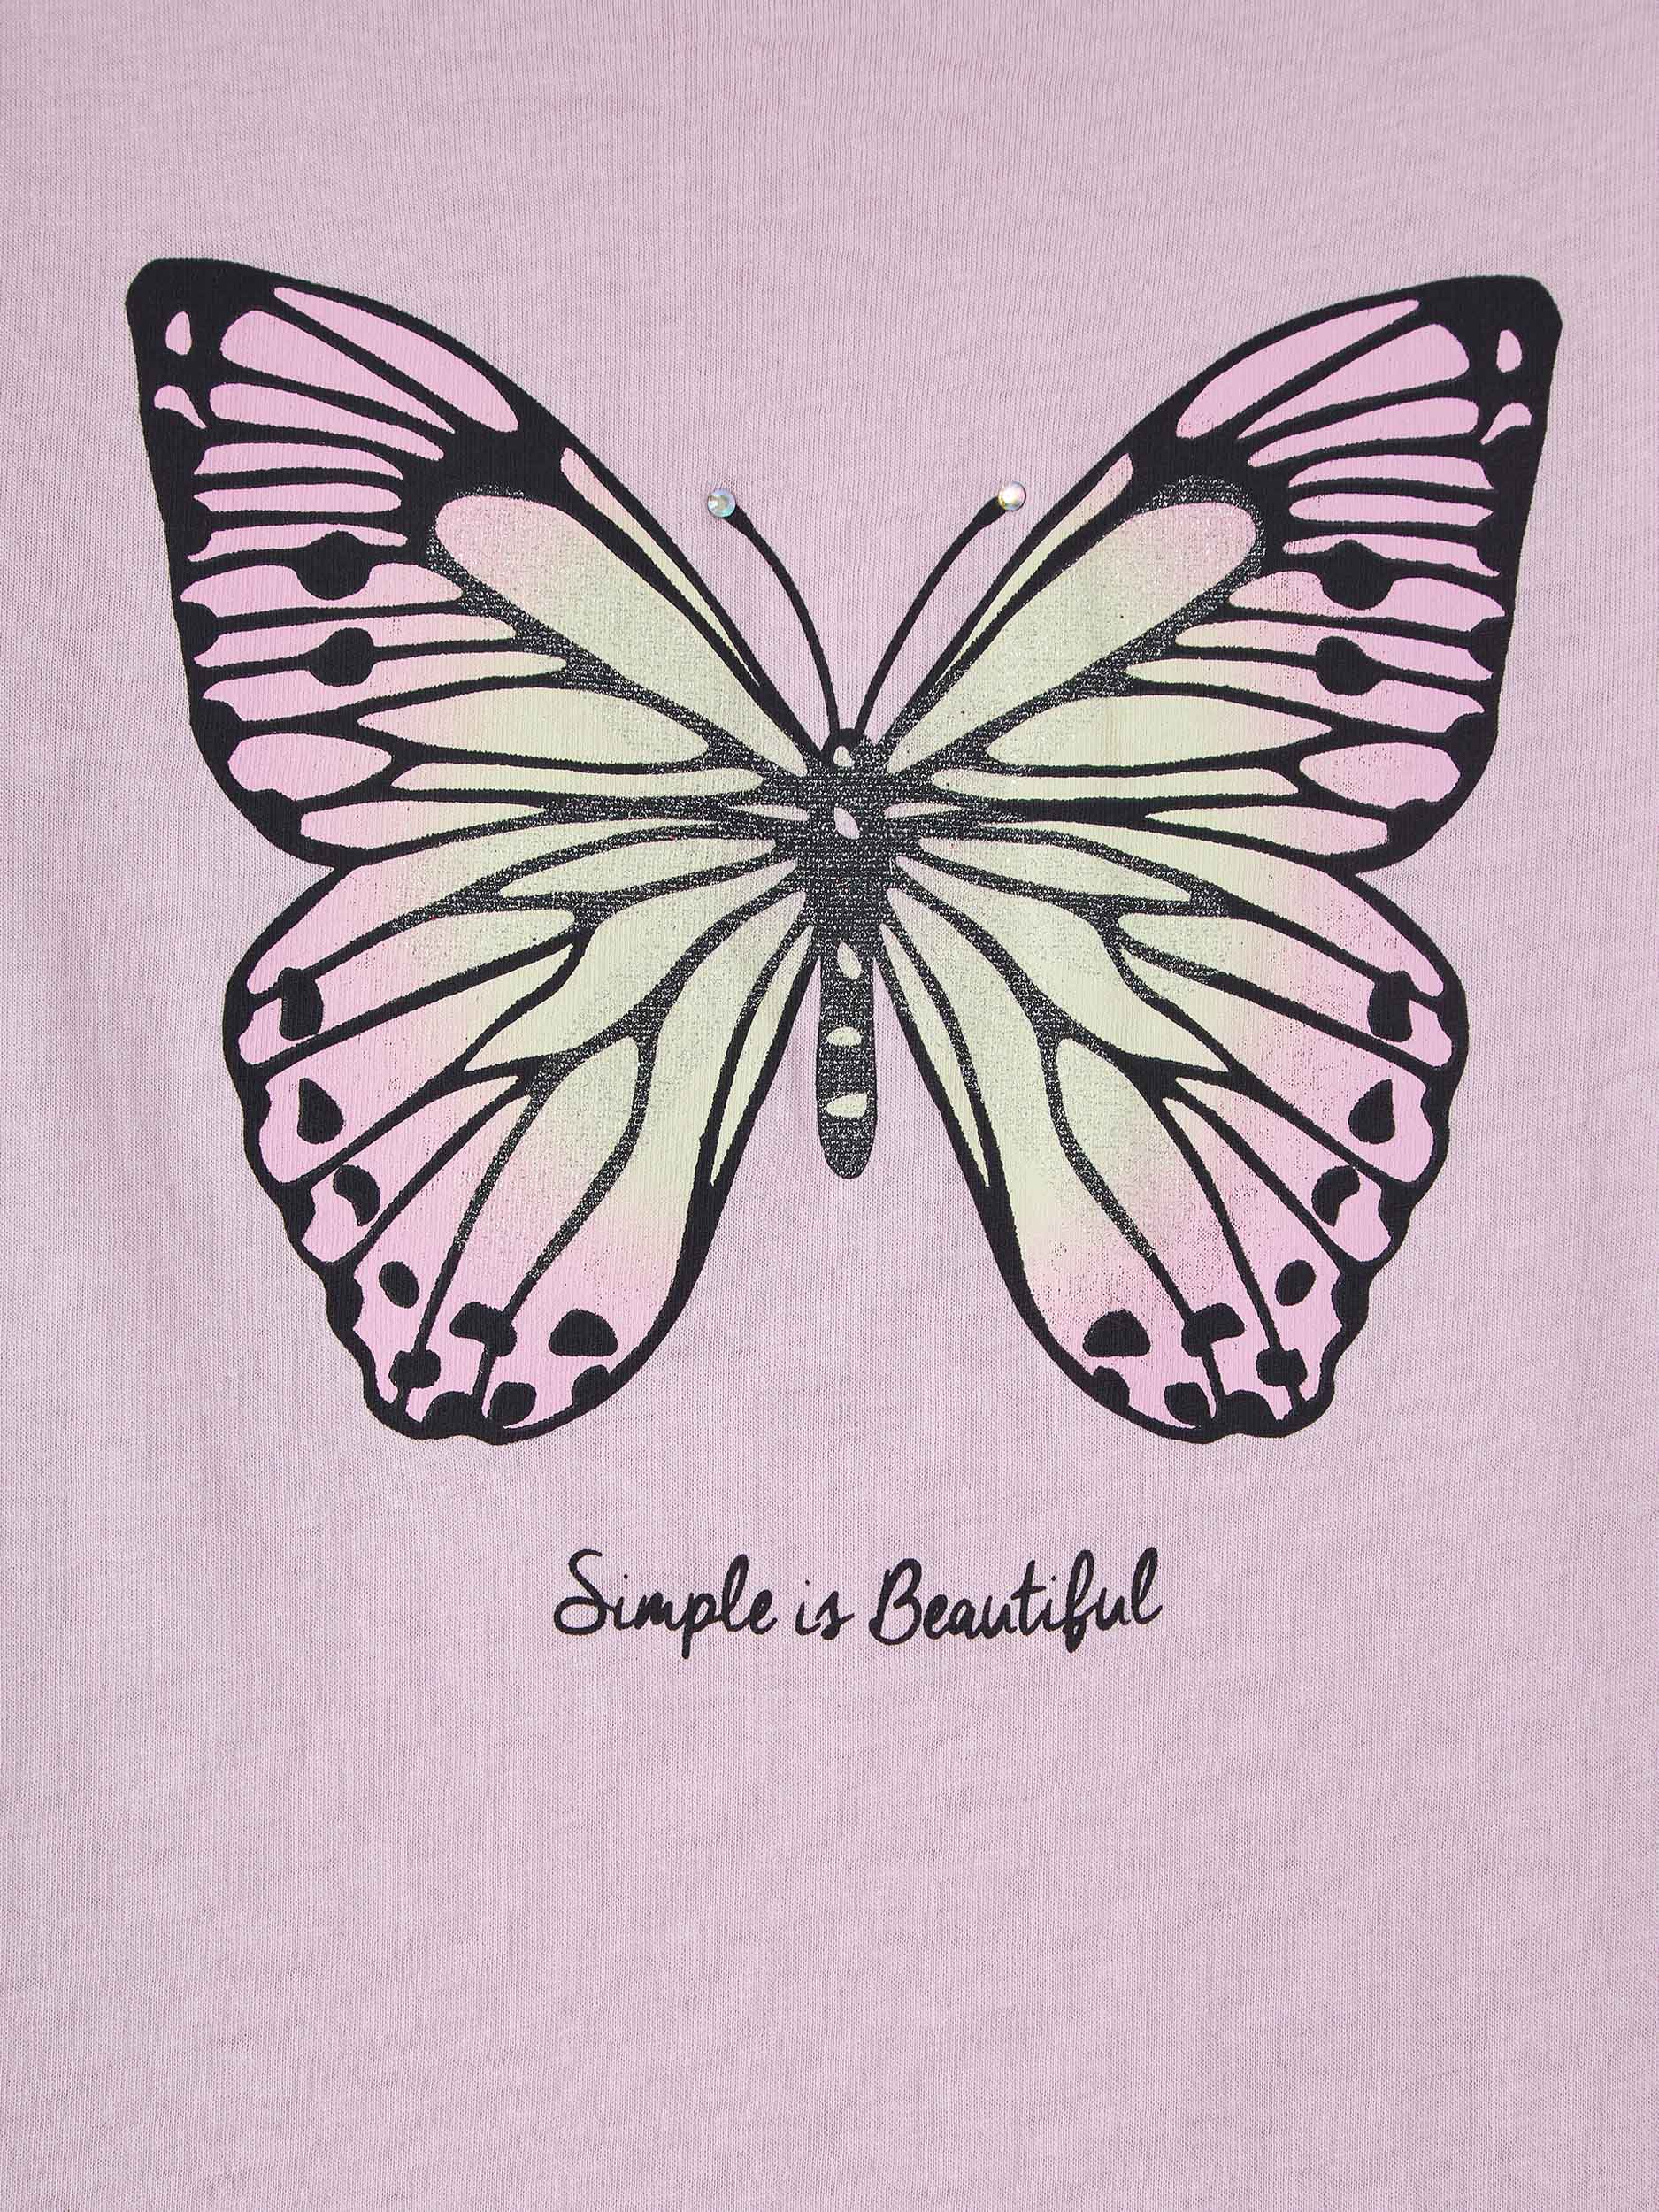 TERRANOVA T-Shirt Farfalla Donna 